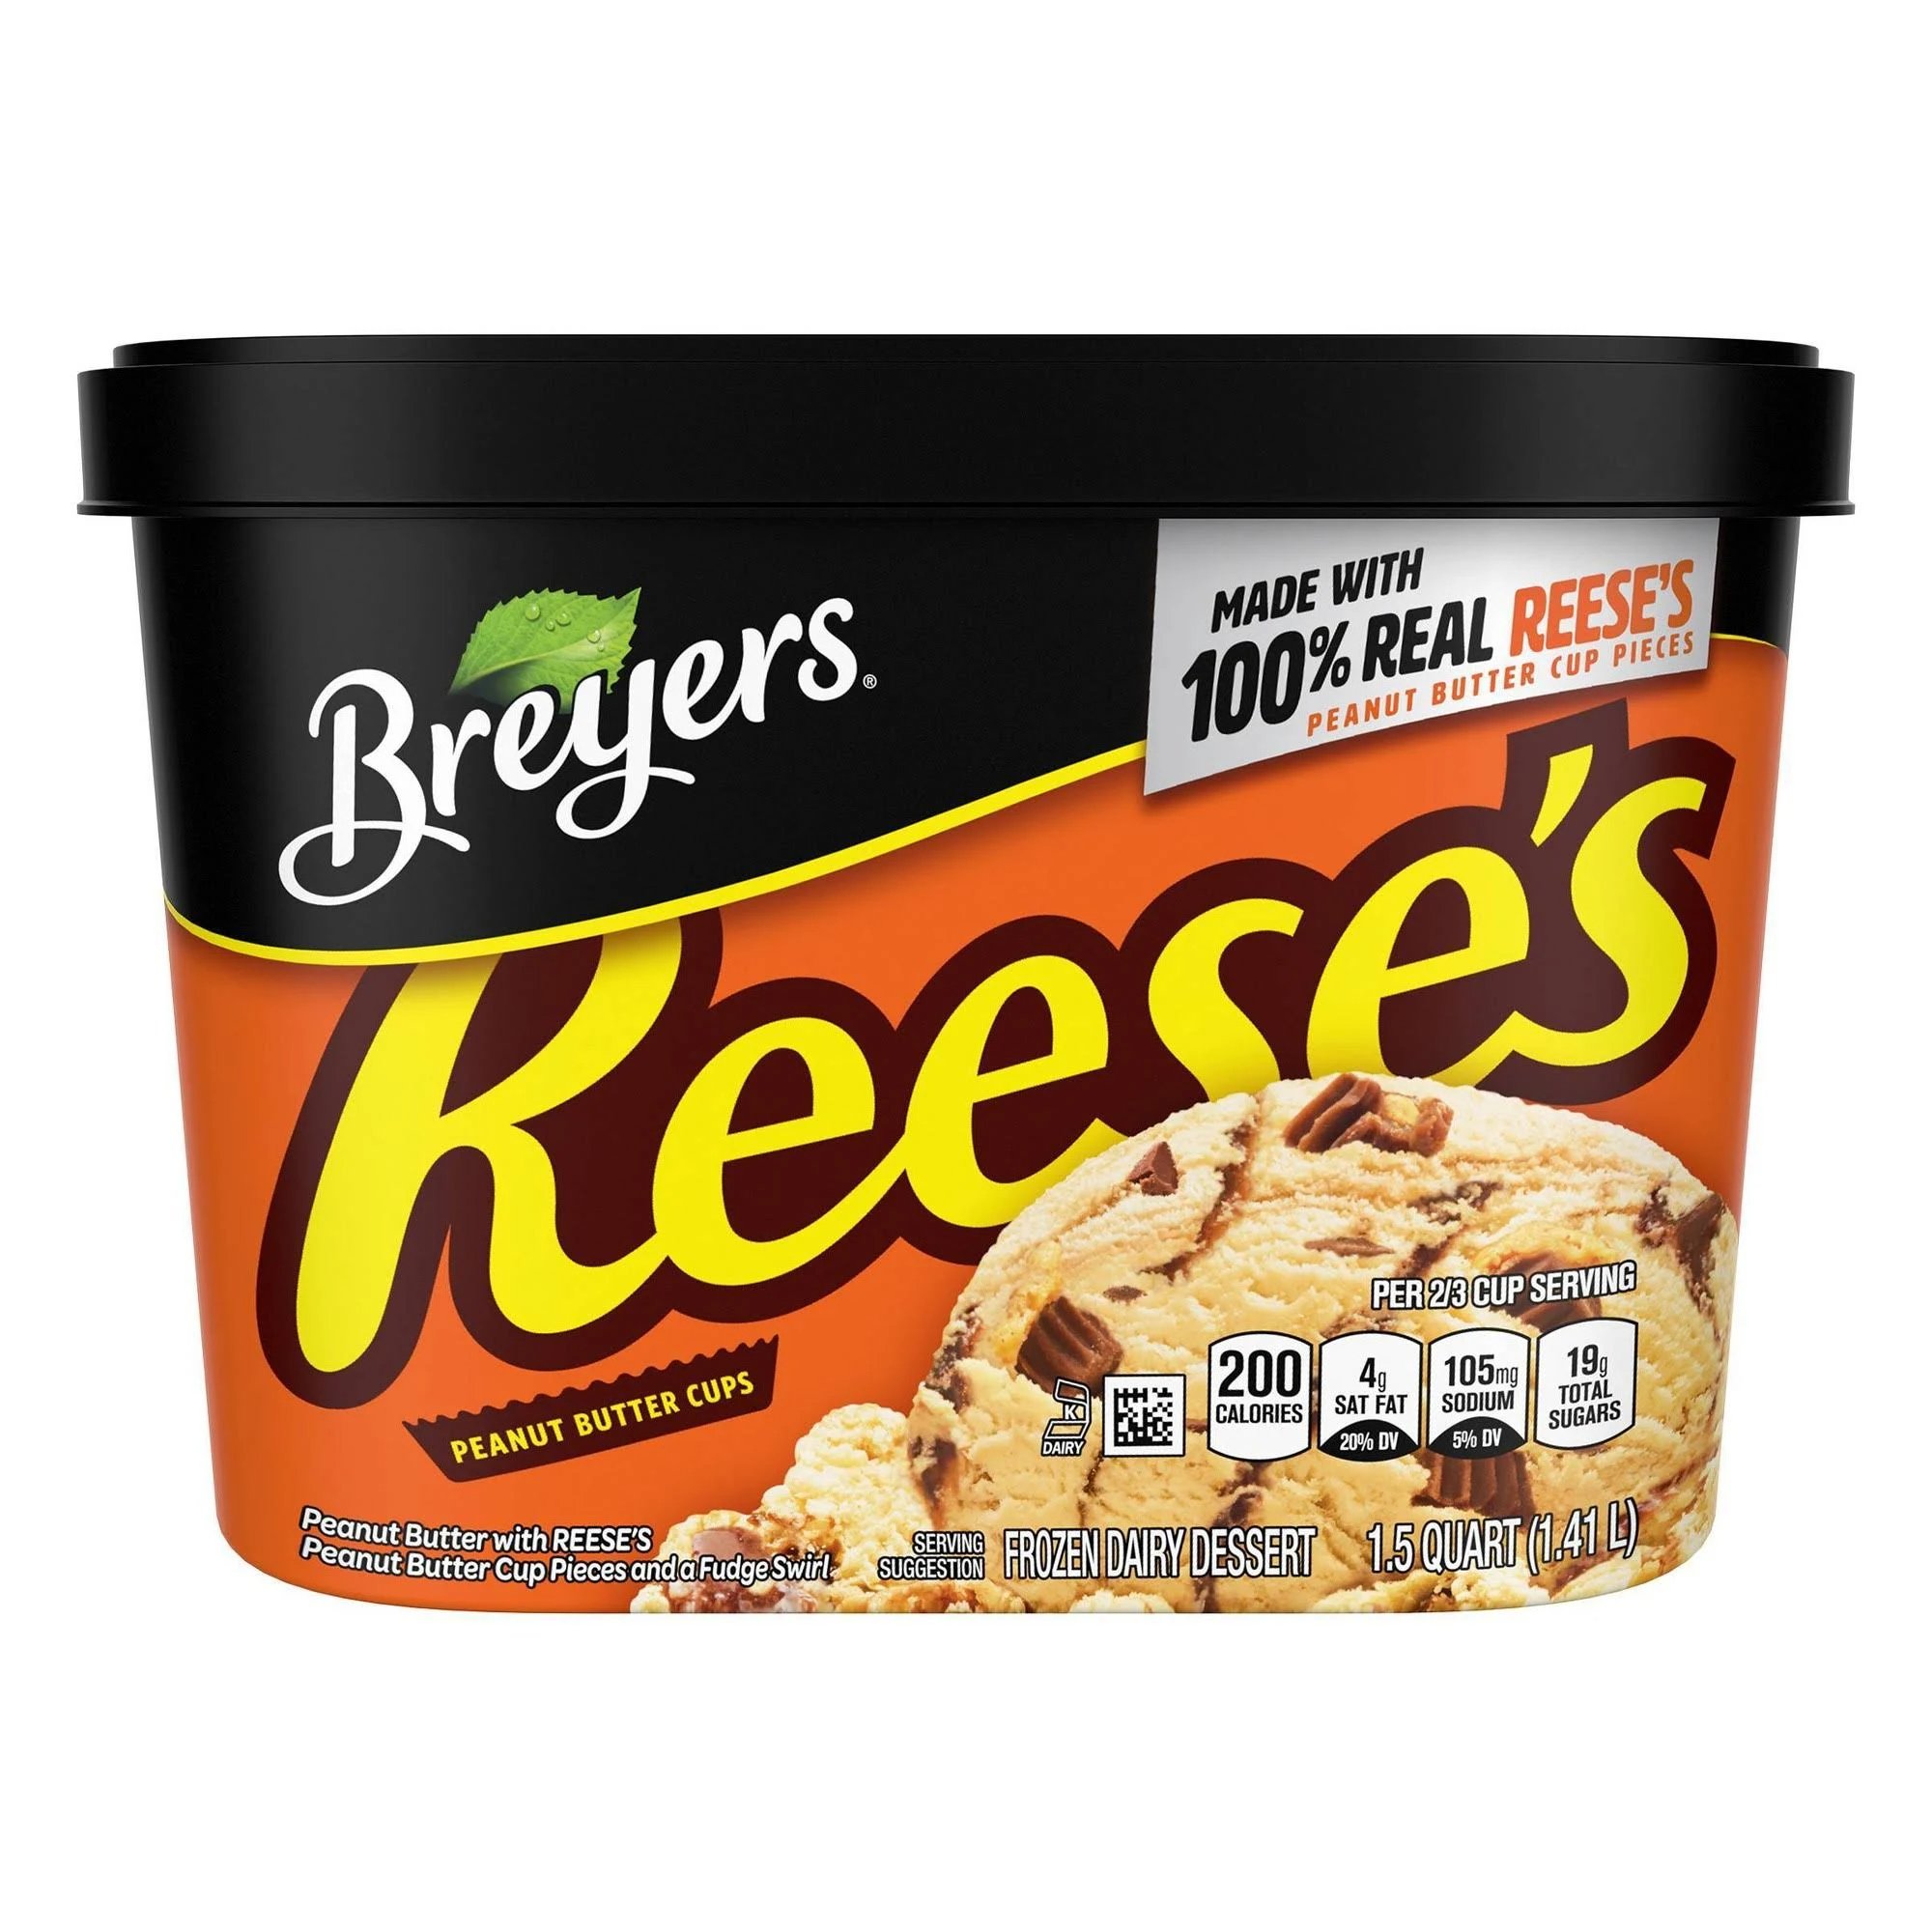 Breyer's Reeses Ice Cream